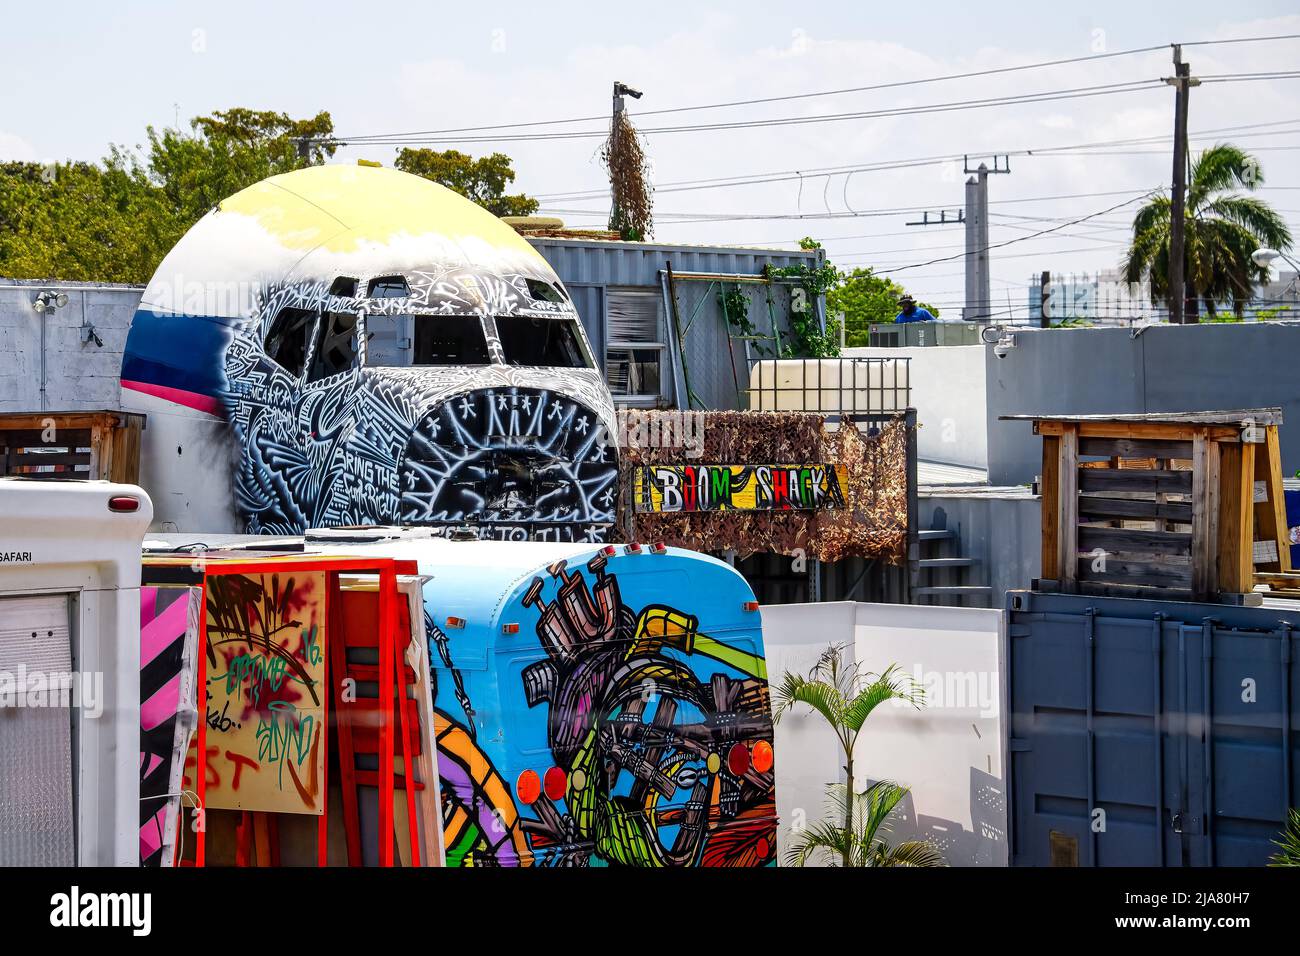 Une cabine d'avion fait partie de l'art urbain dans le quartier.le quartier de la ville est célèbre pour son art urbain ou graffiti qui est peint par des artistes dans le Th Banque D'Images